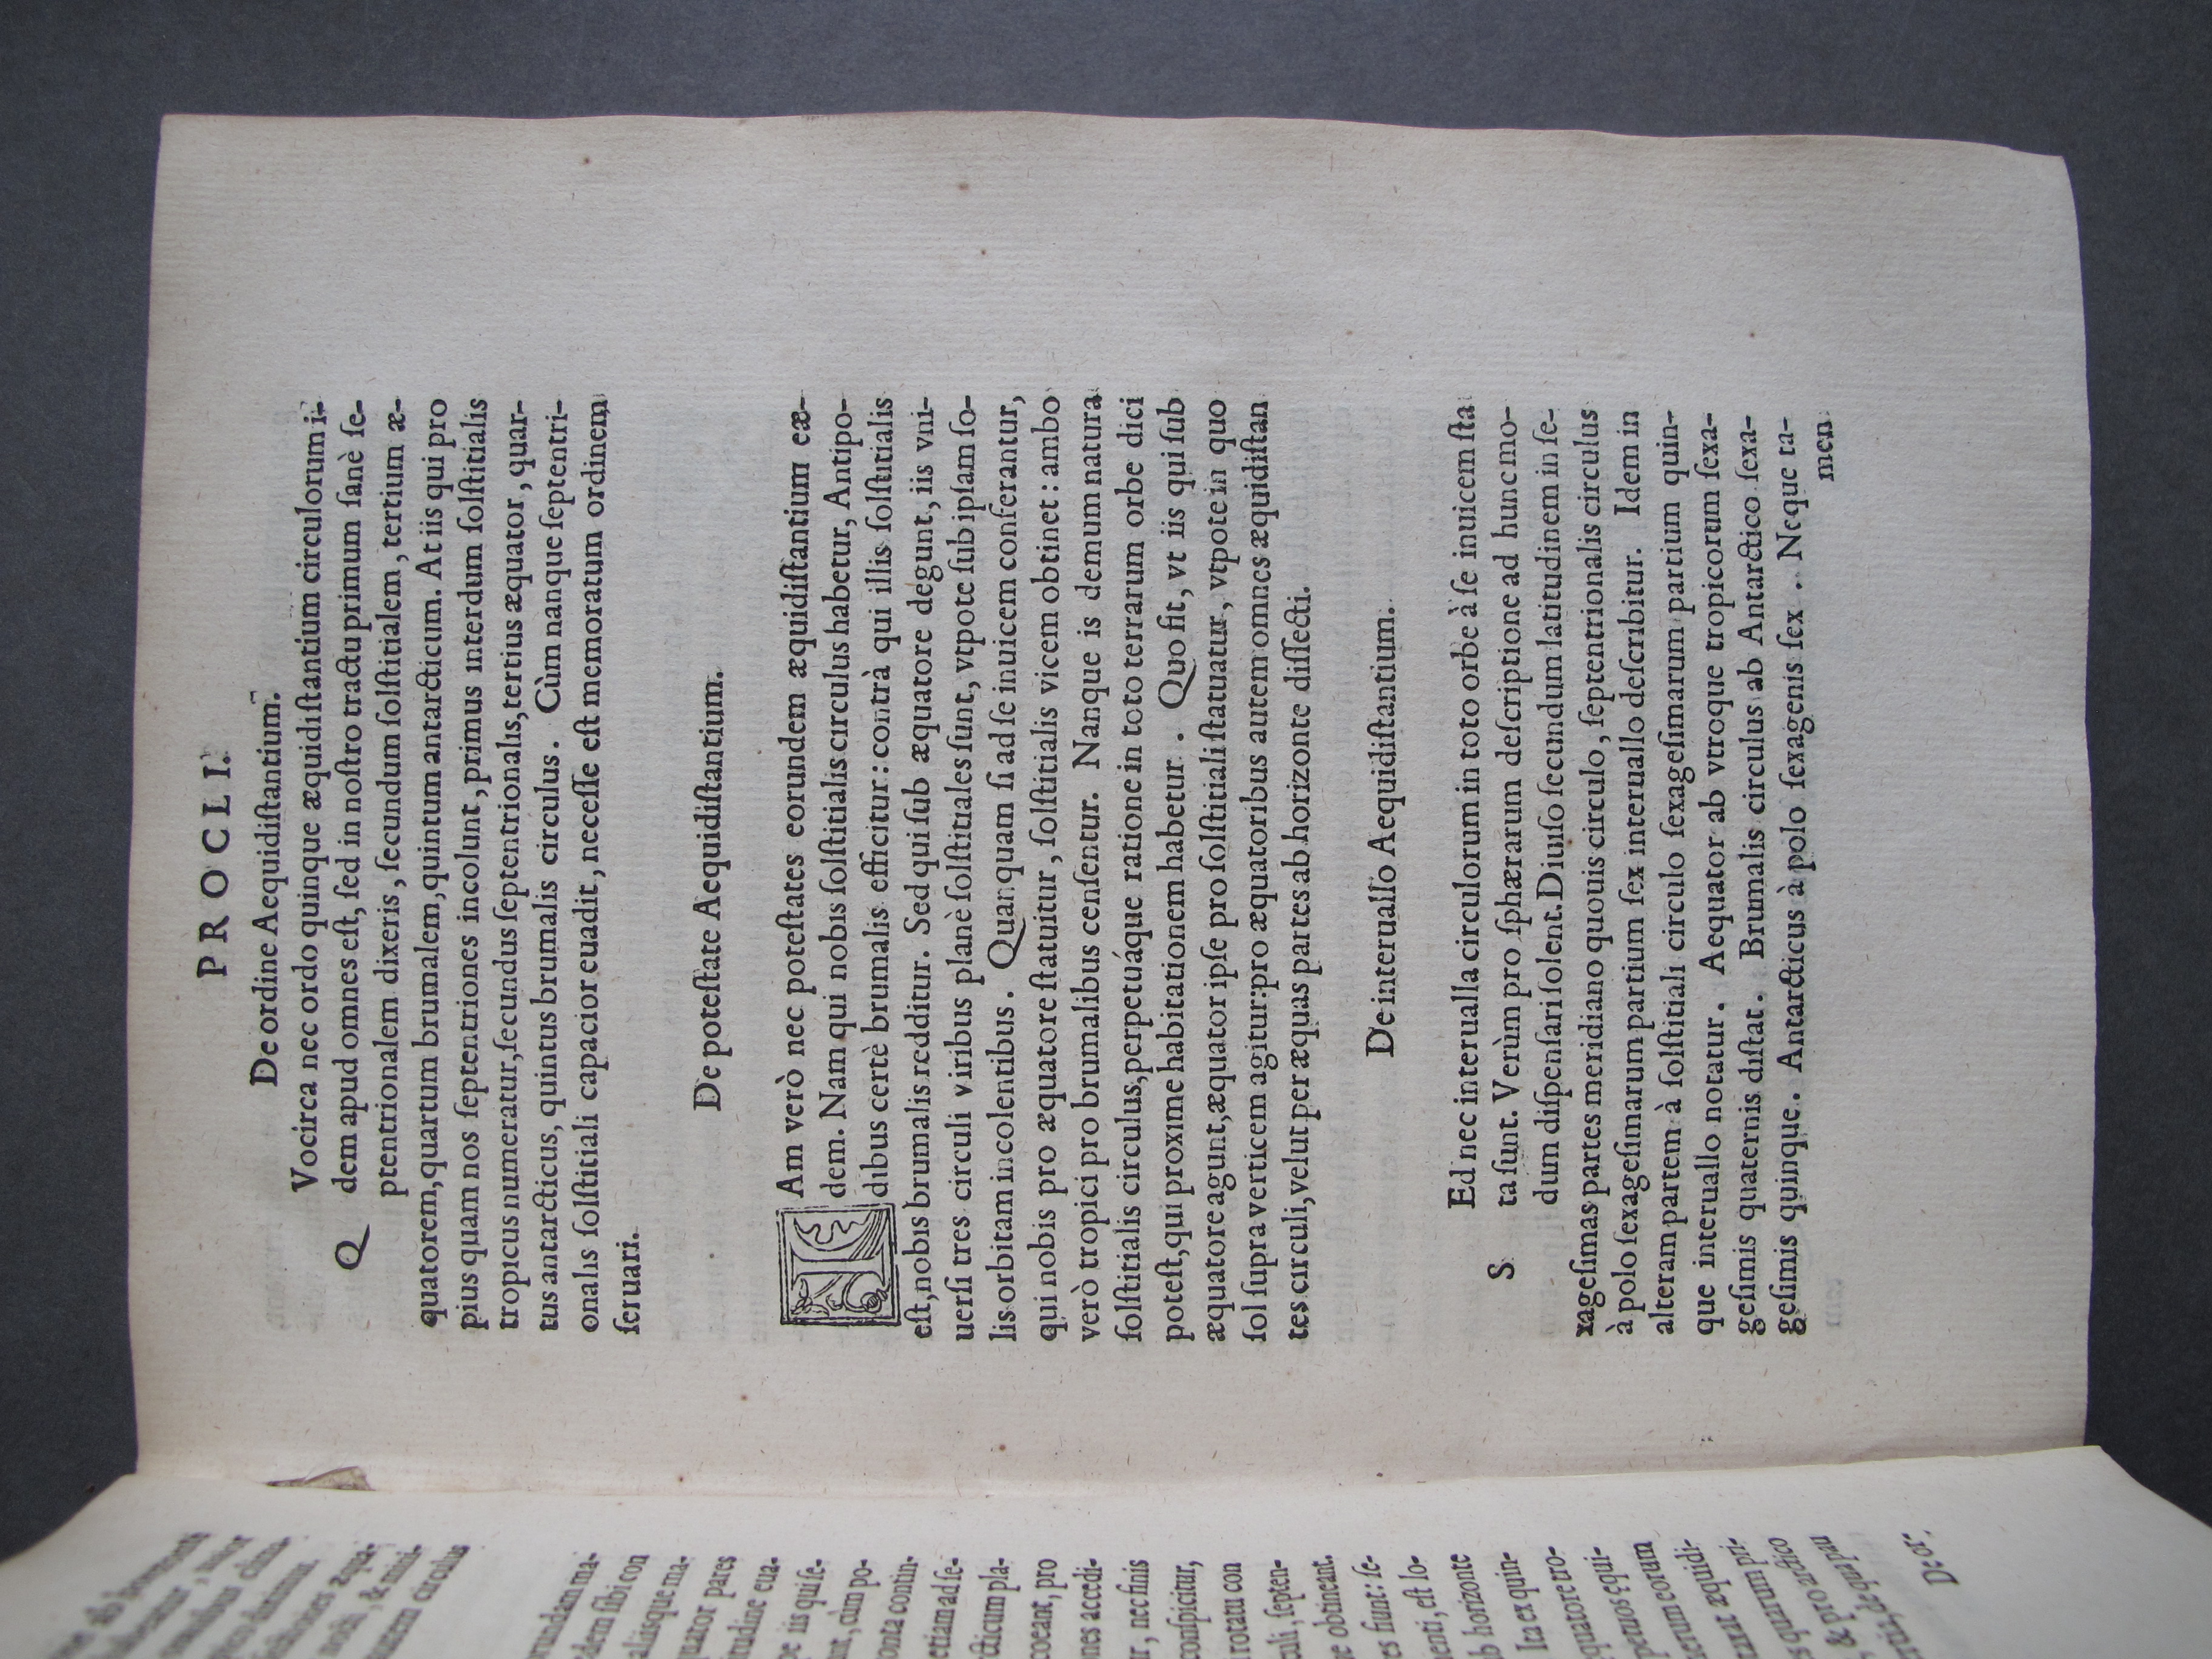 Folio A4 recto